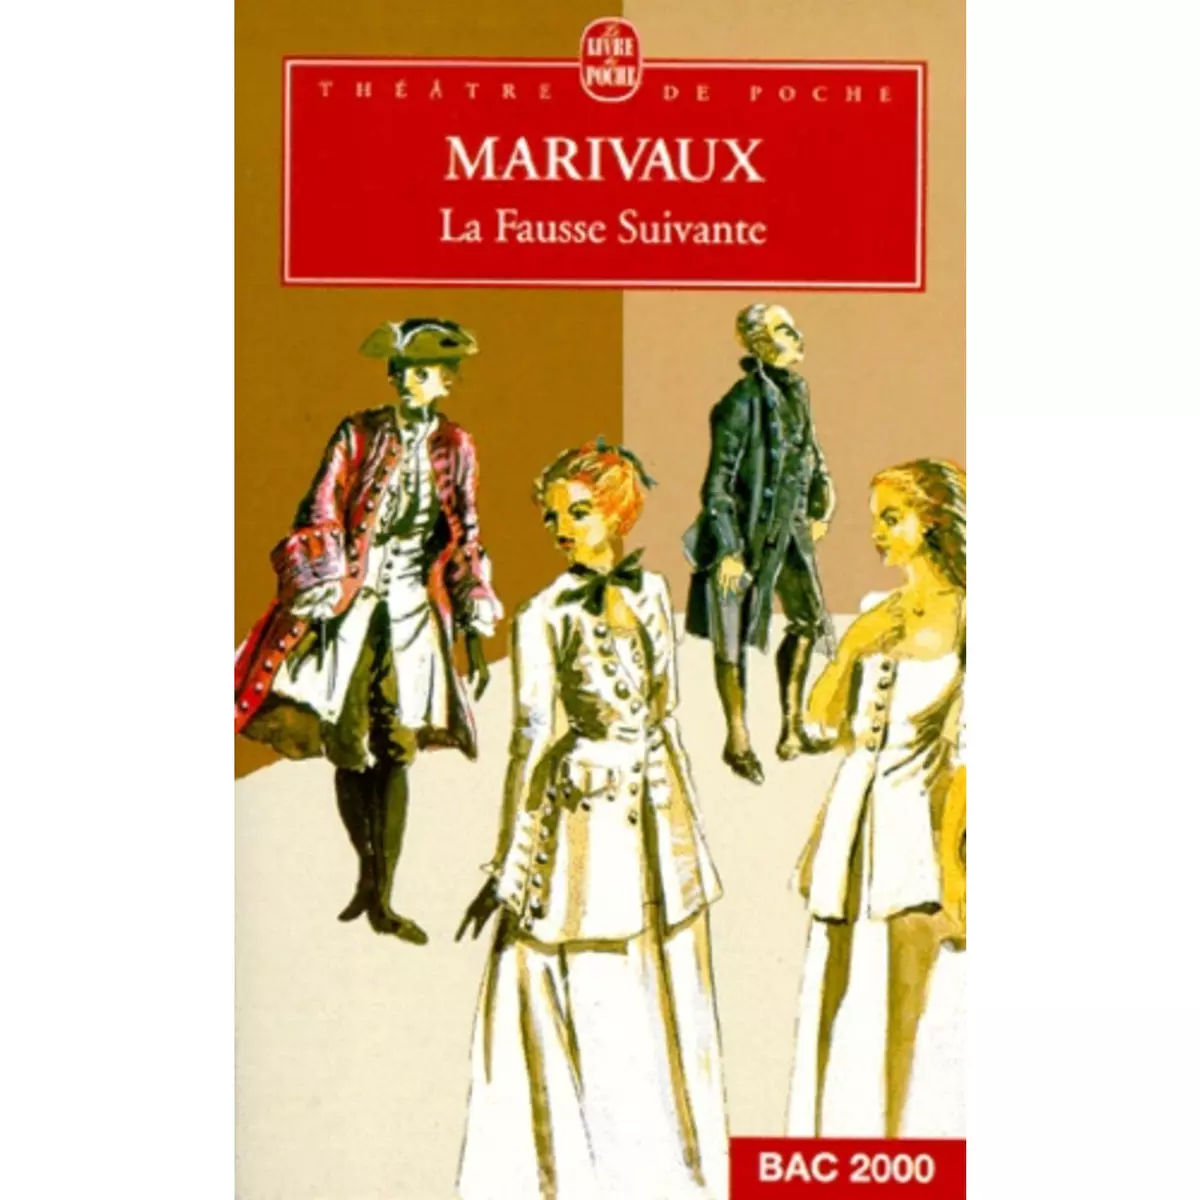  LA FAUSSE SUIVANTE, Marivaux Pierre de